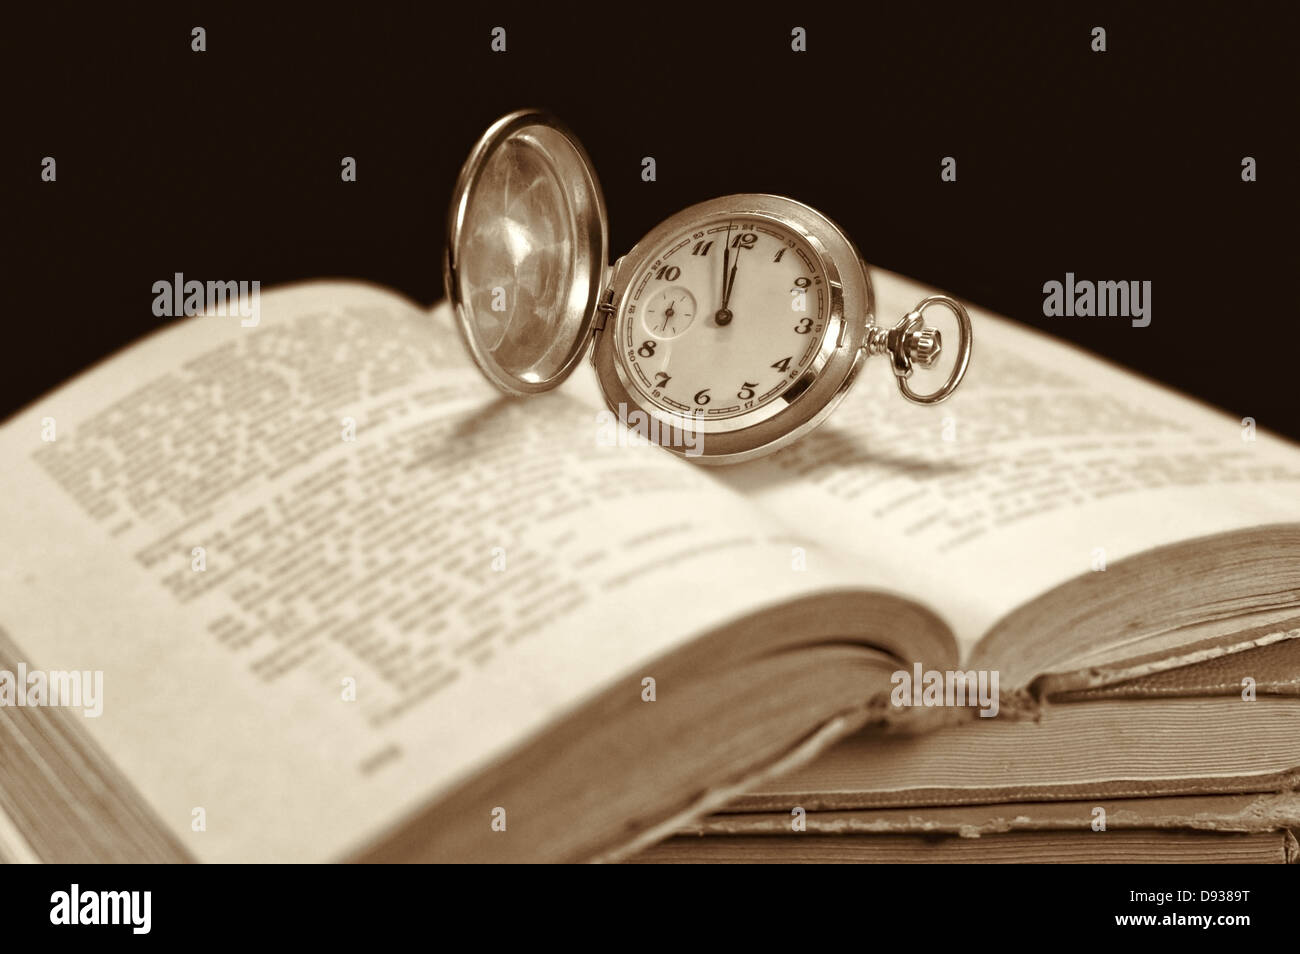 Alte Taschenuhr auf offenes Buch. Selektiven Fokus auf Uhr. Stockfoto